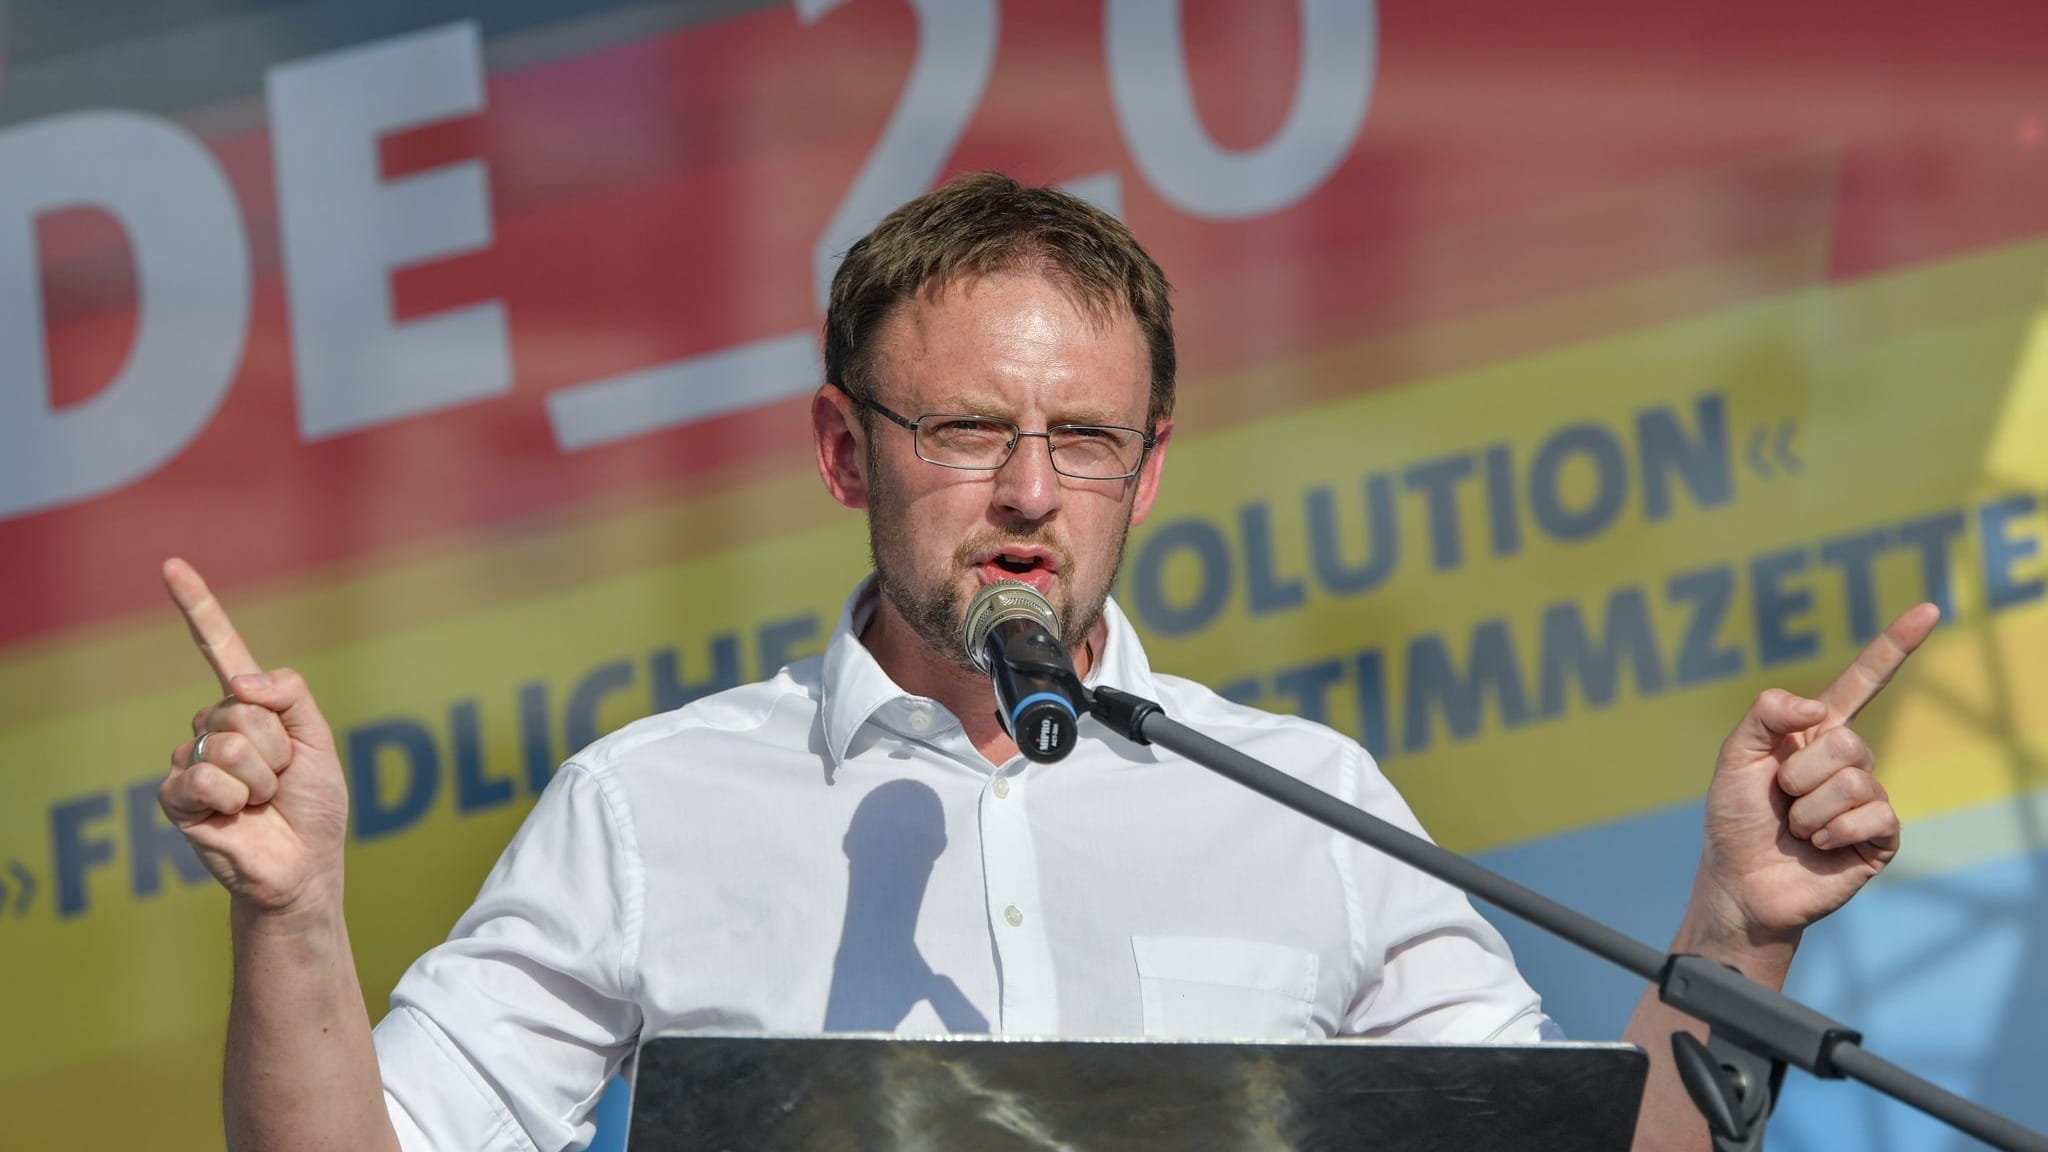 Sachsen: Bürgermeisterwahl in Großschirma nach AfD-Sieg für ungültig erklärt